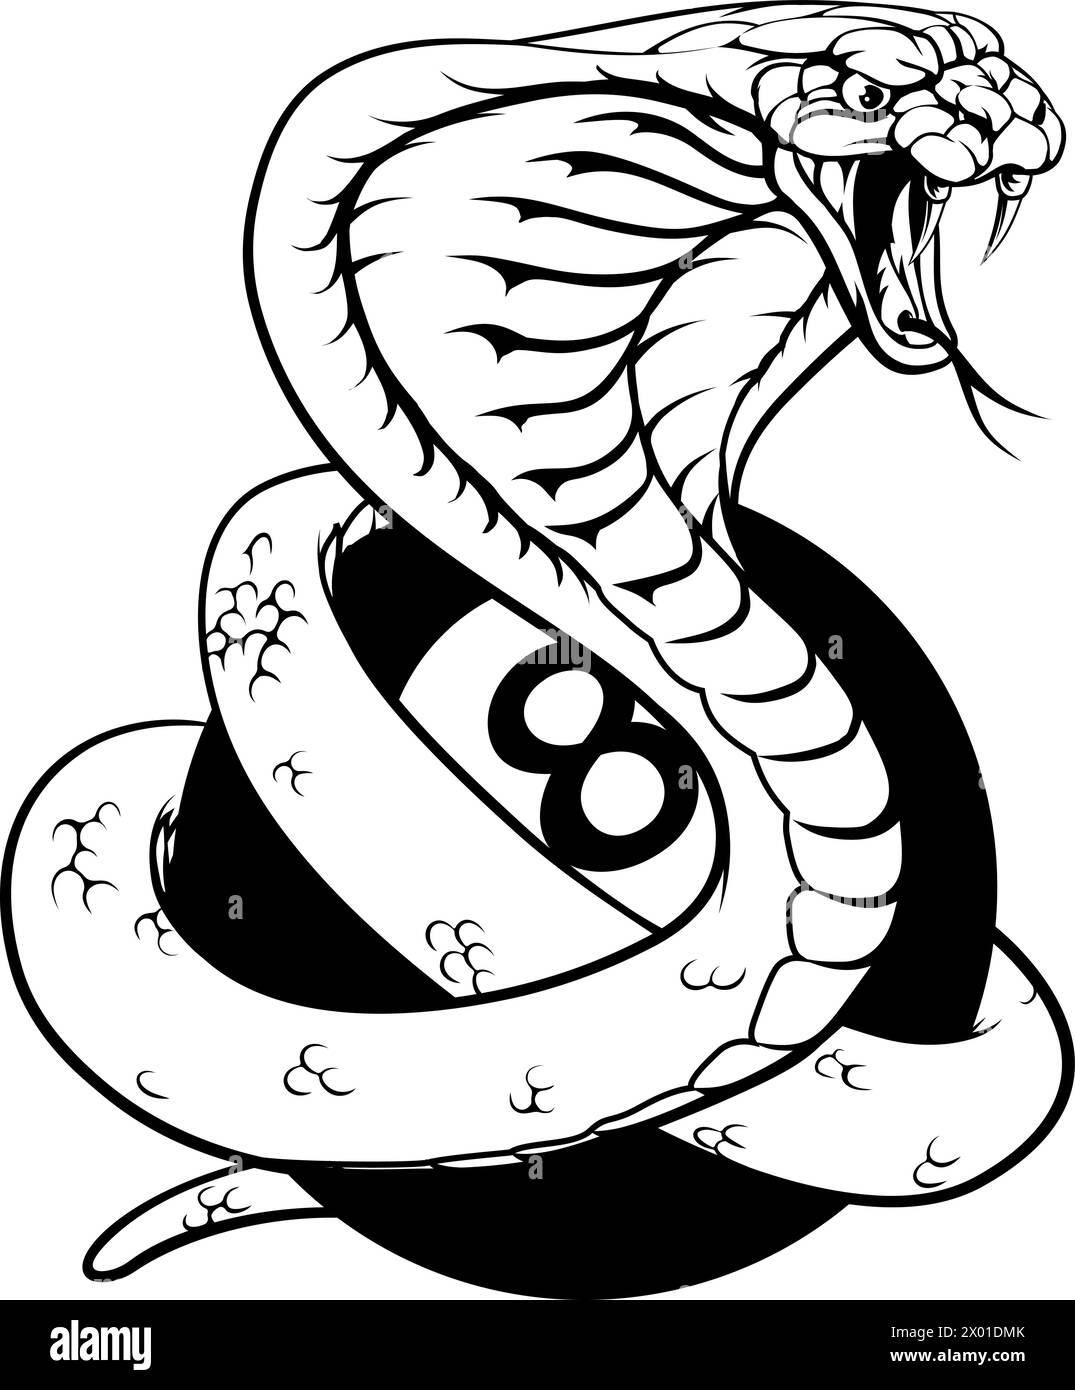 Cobra Snake Pool 8 Ball Biliardo Mascot Cartoon Illustrazione Vettoriale